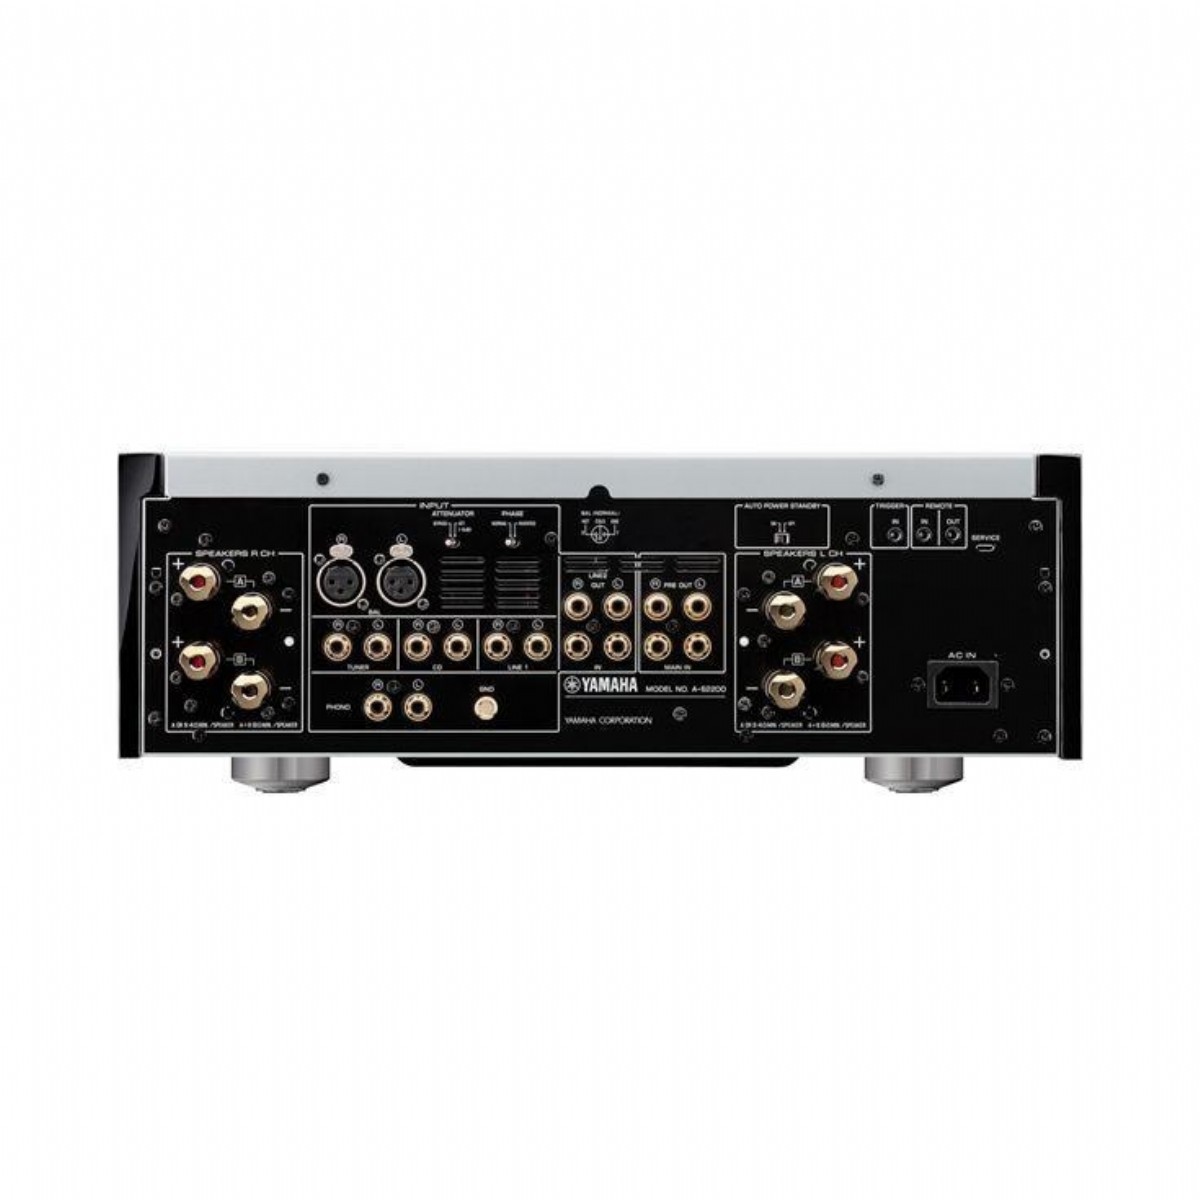 Entegre Ampliler | Yamaha AS 2200 Entegre Amfi | AS 2200 | yamaha as2200 entegre amplifier,as2200 amfi,yamaha,akusta hifi | 